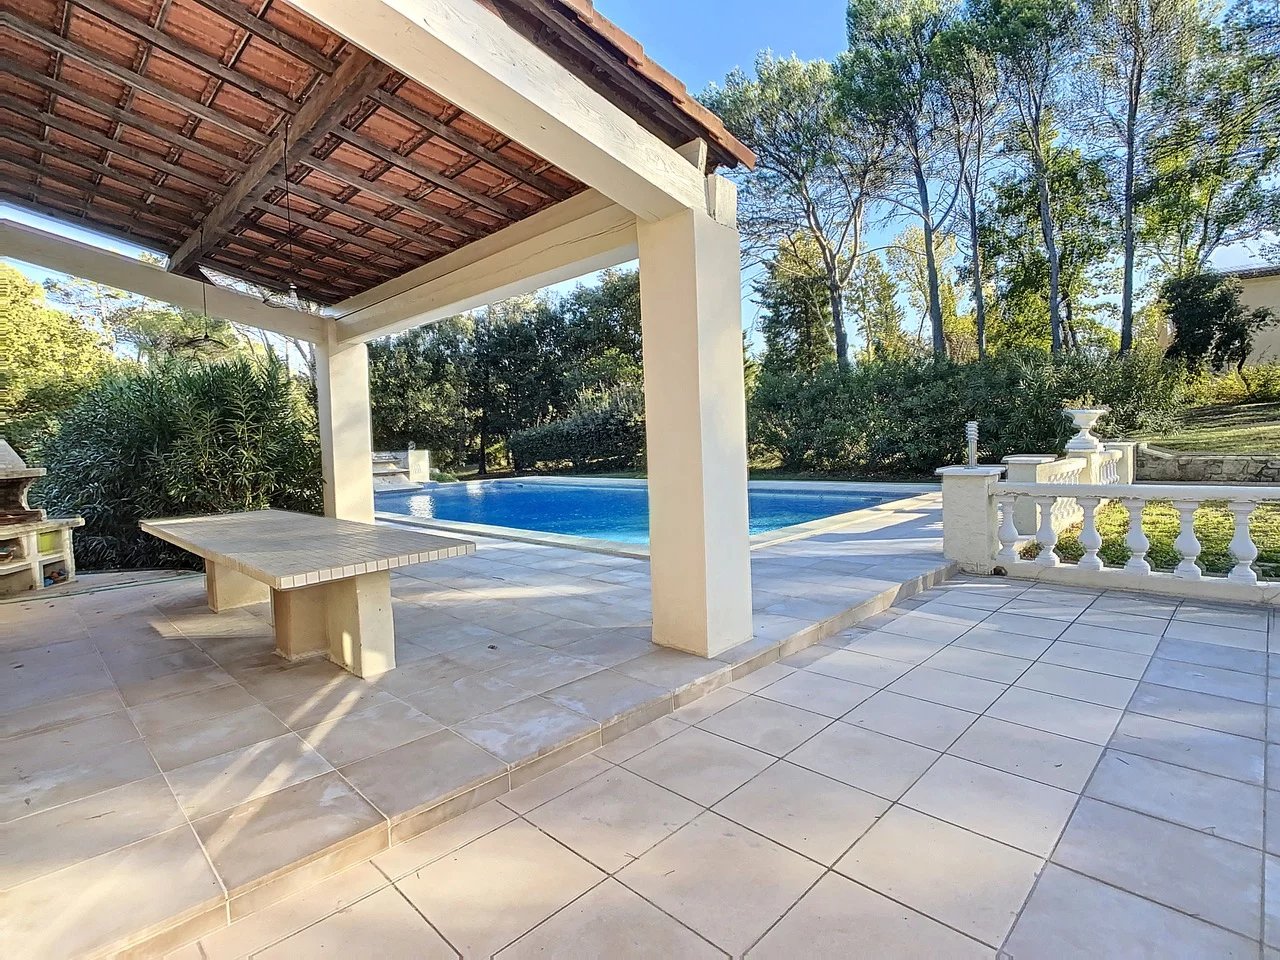 Fraai gerenoveerde villa met groot zwembad op terrein van 8.000 m2